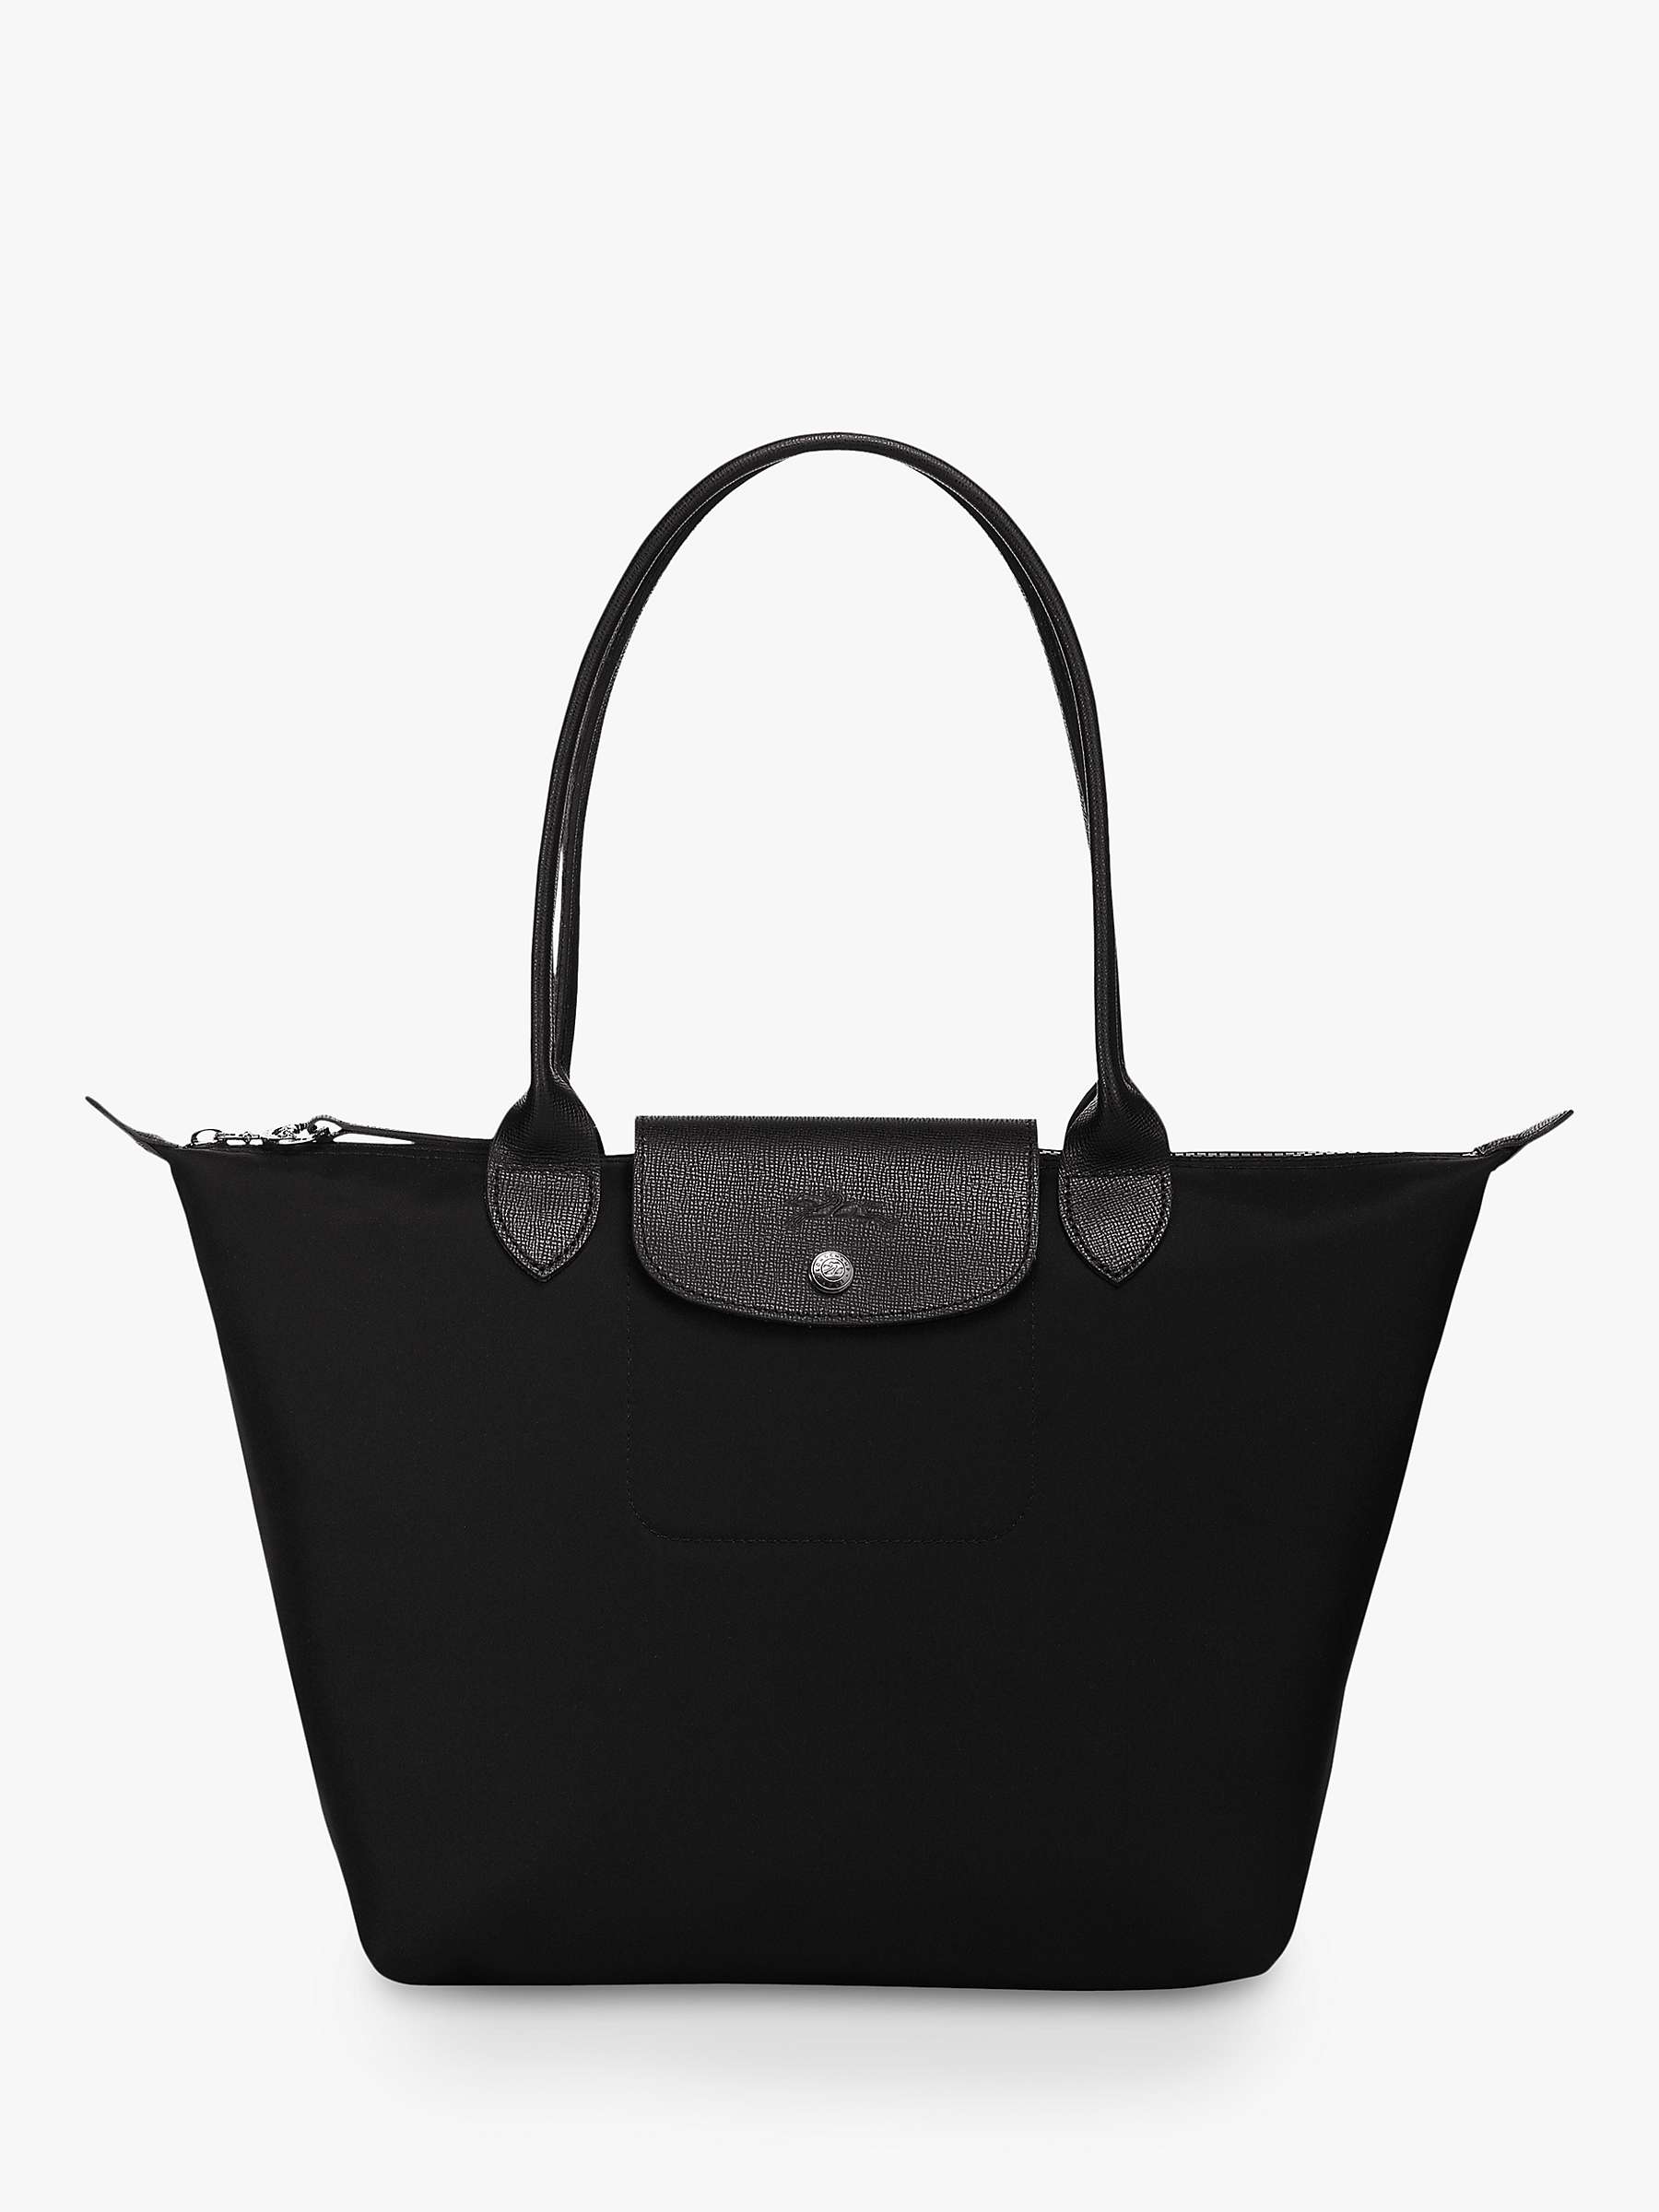 Longchamp black tote bag